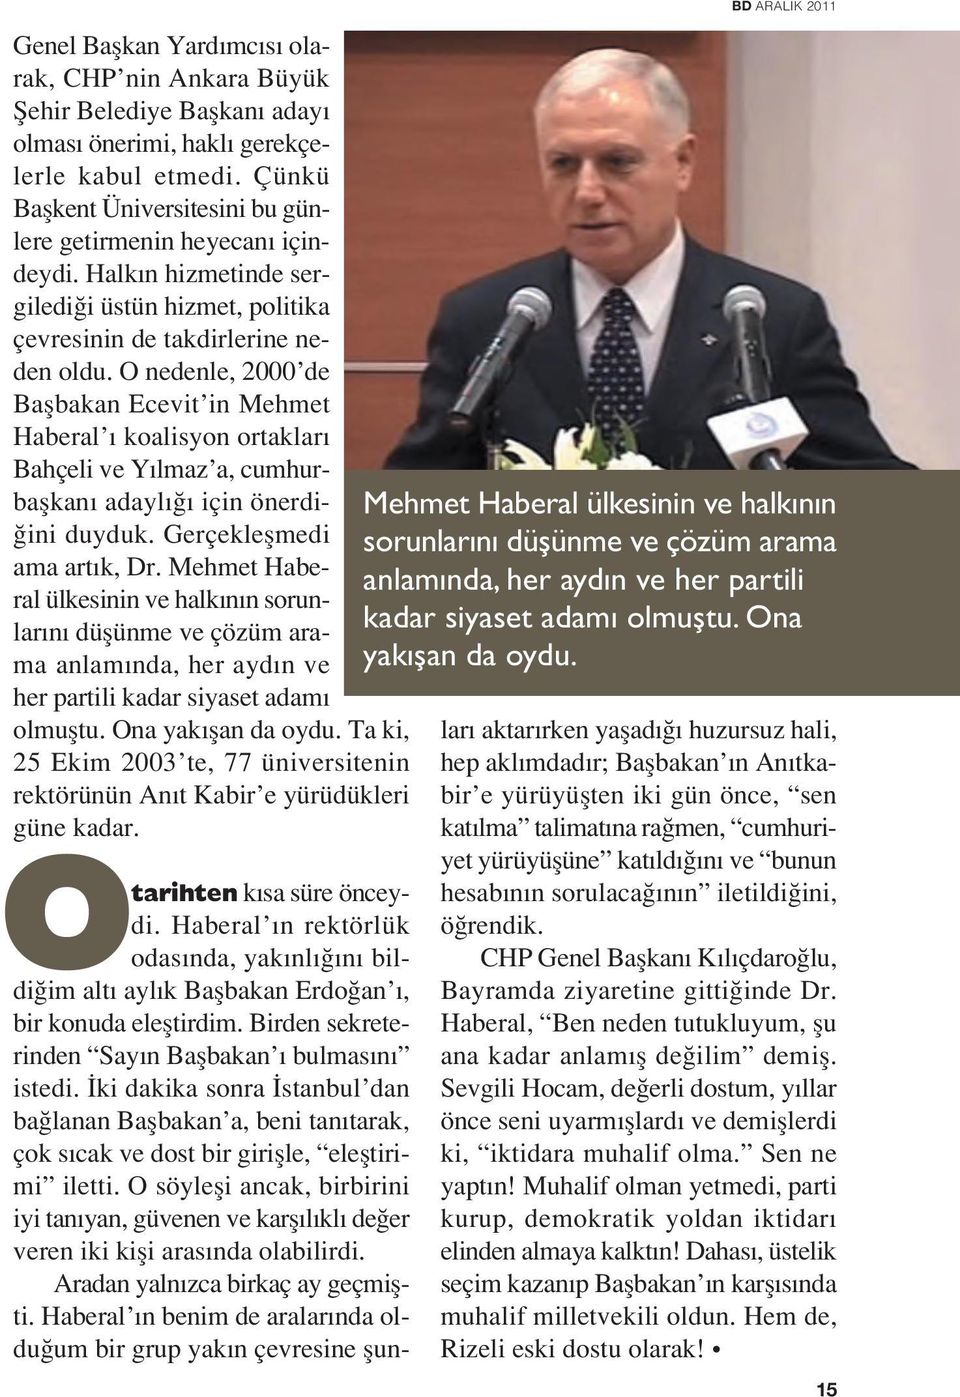 O nedenle, 2000 de Baflbakan Ecevit in Mehmet Haberal koalisyon ortaklar Bahçeli ve Y lmaz a, cumhurbaflkan adayl için önerdi- ini duyduk. Gerçekleflmedi ama art k, Dr.